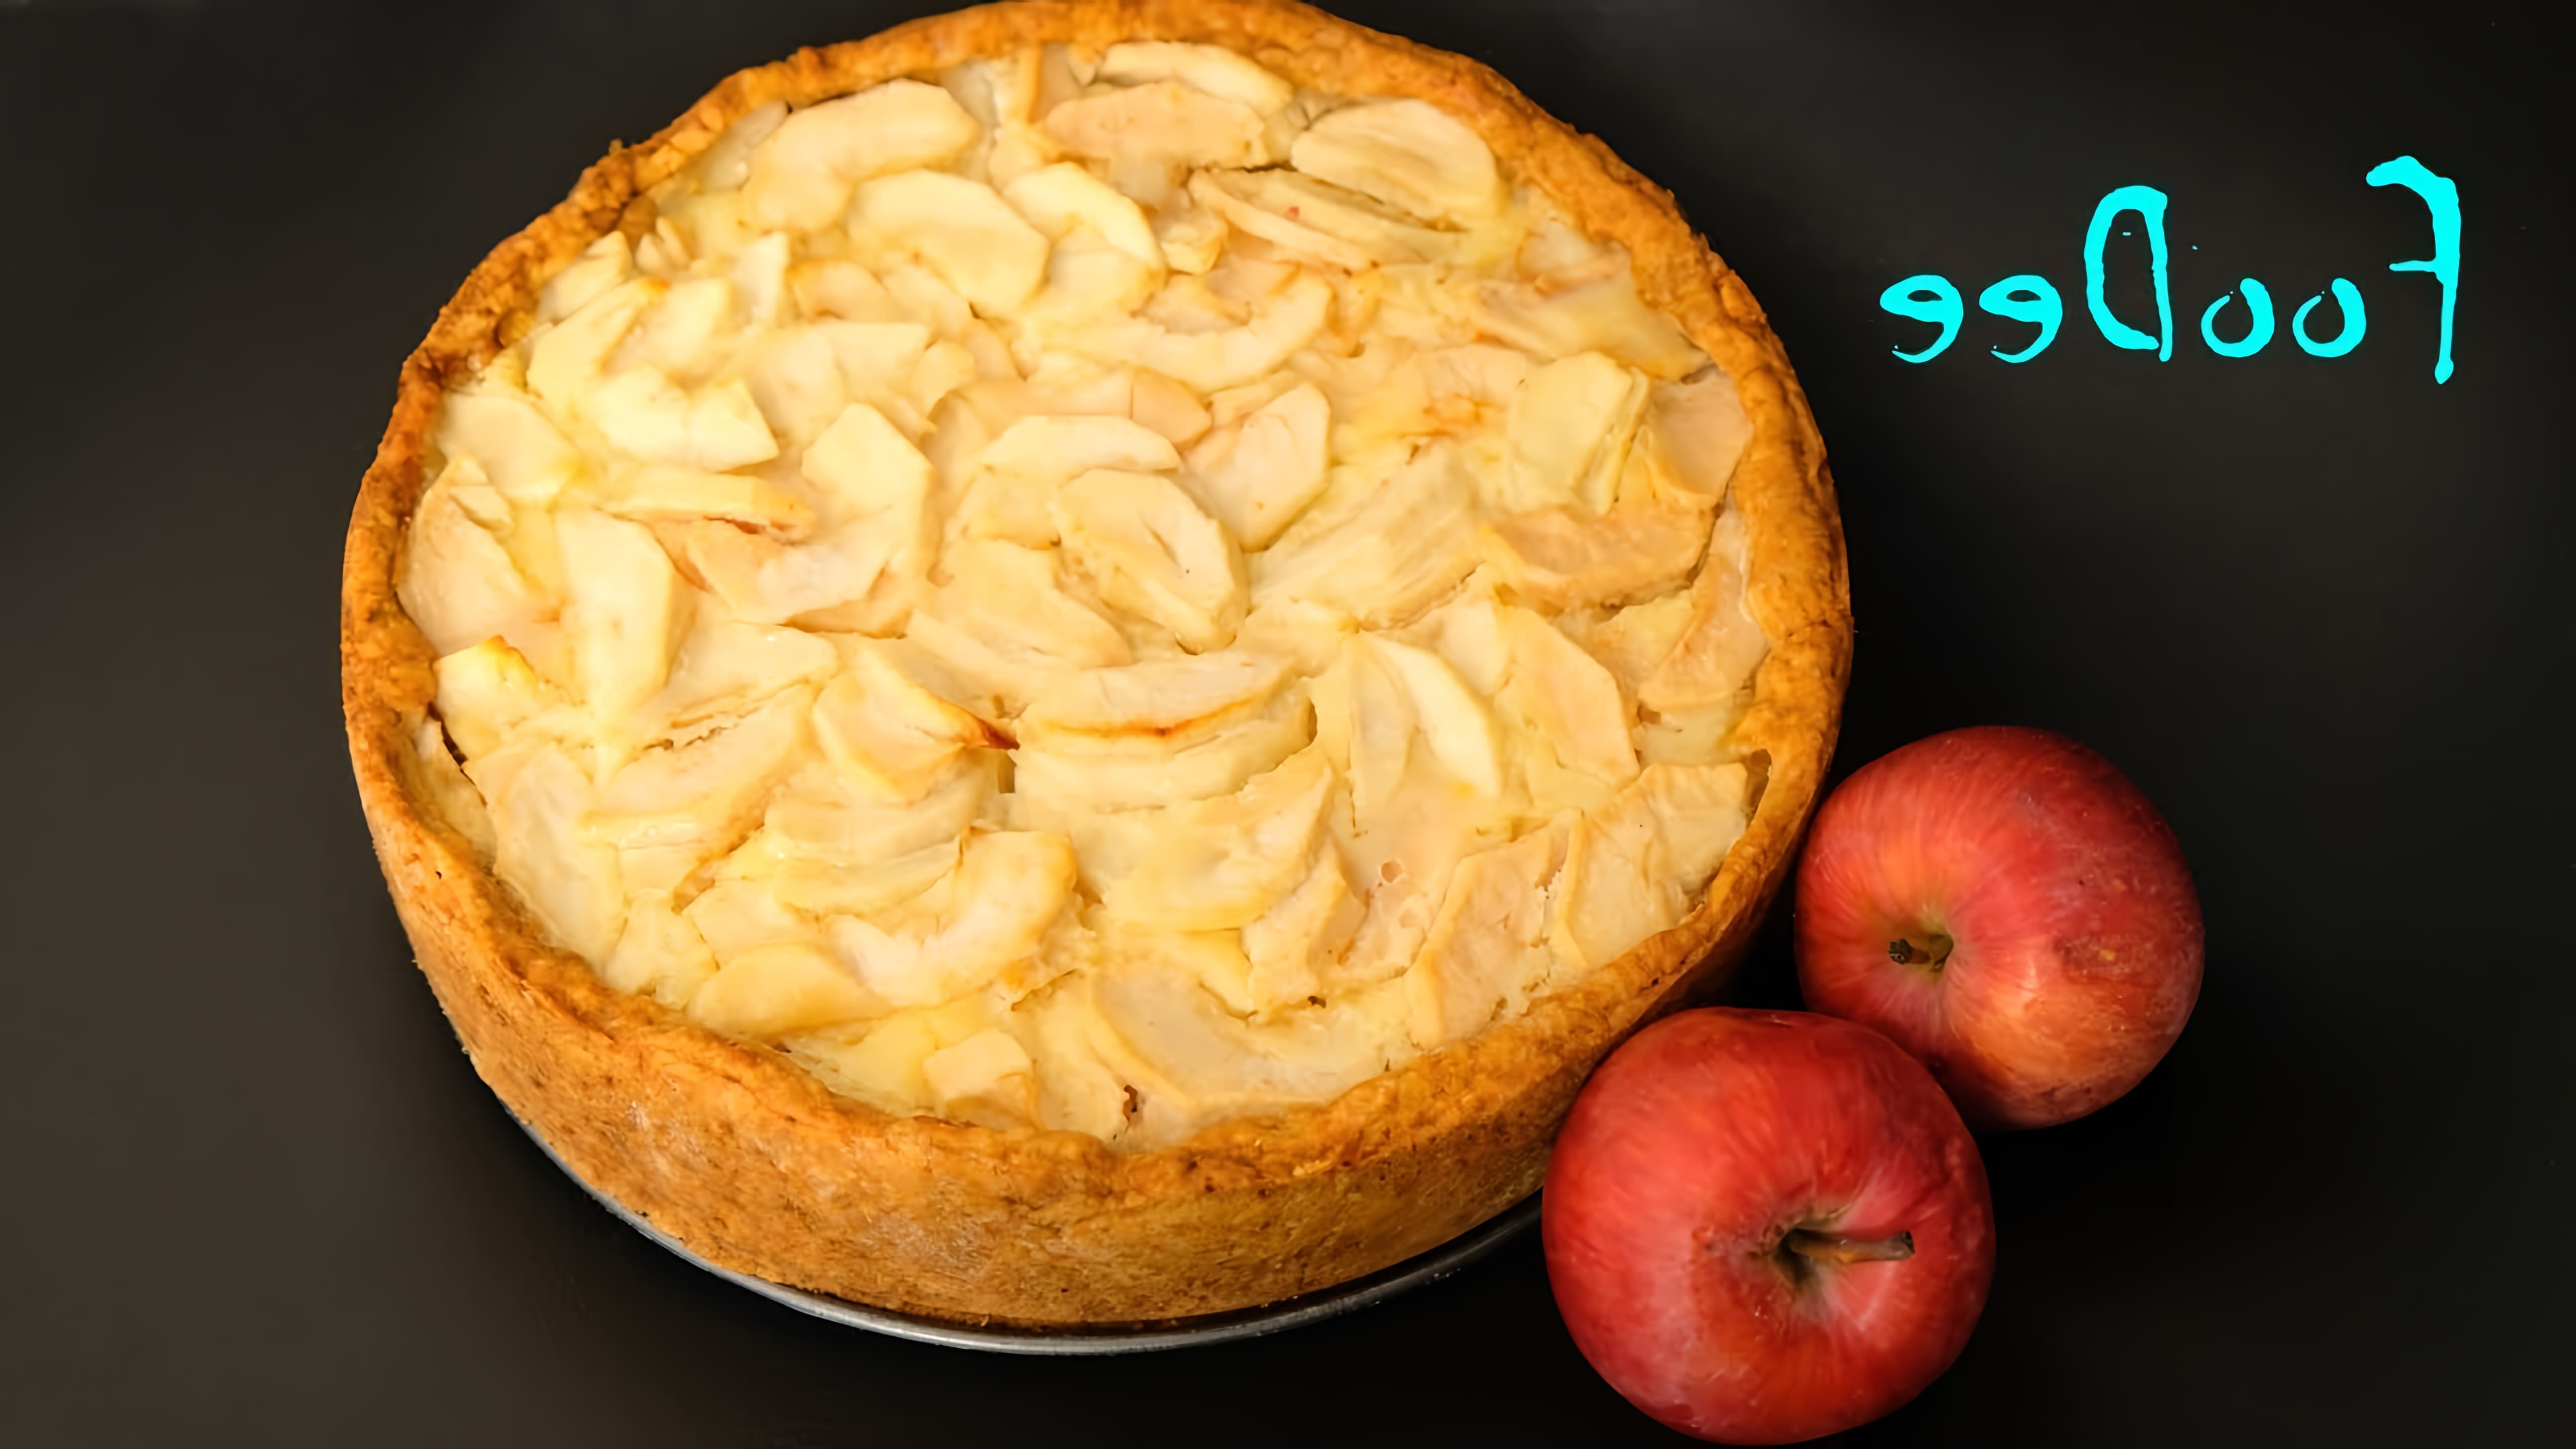 В этом видео демонстрируется рецепт приготовления яблочного Цветаевского пирога